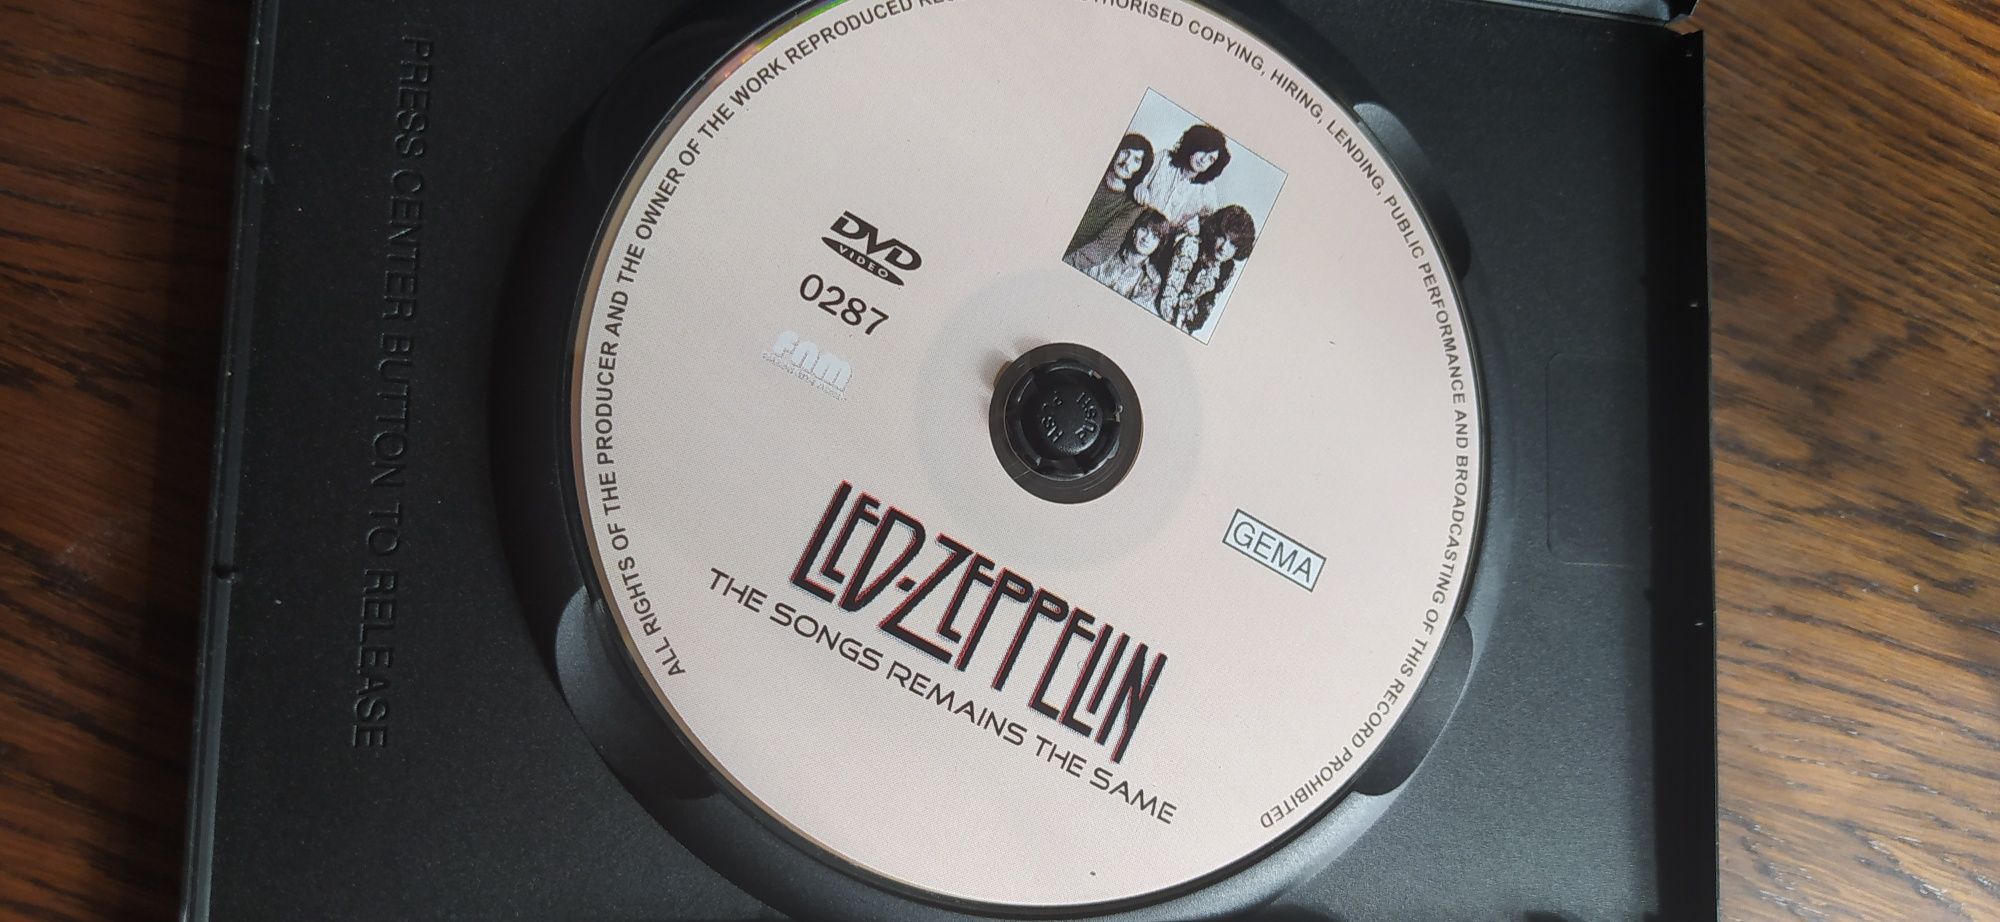 Led Zeppelin the song DVD